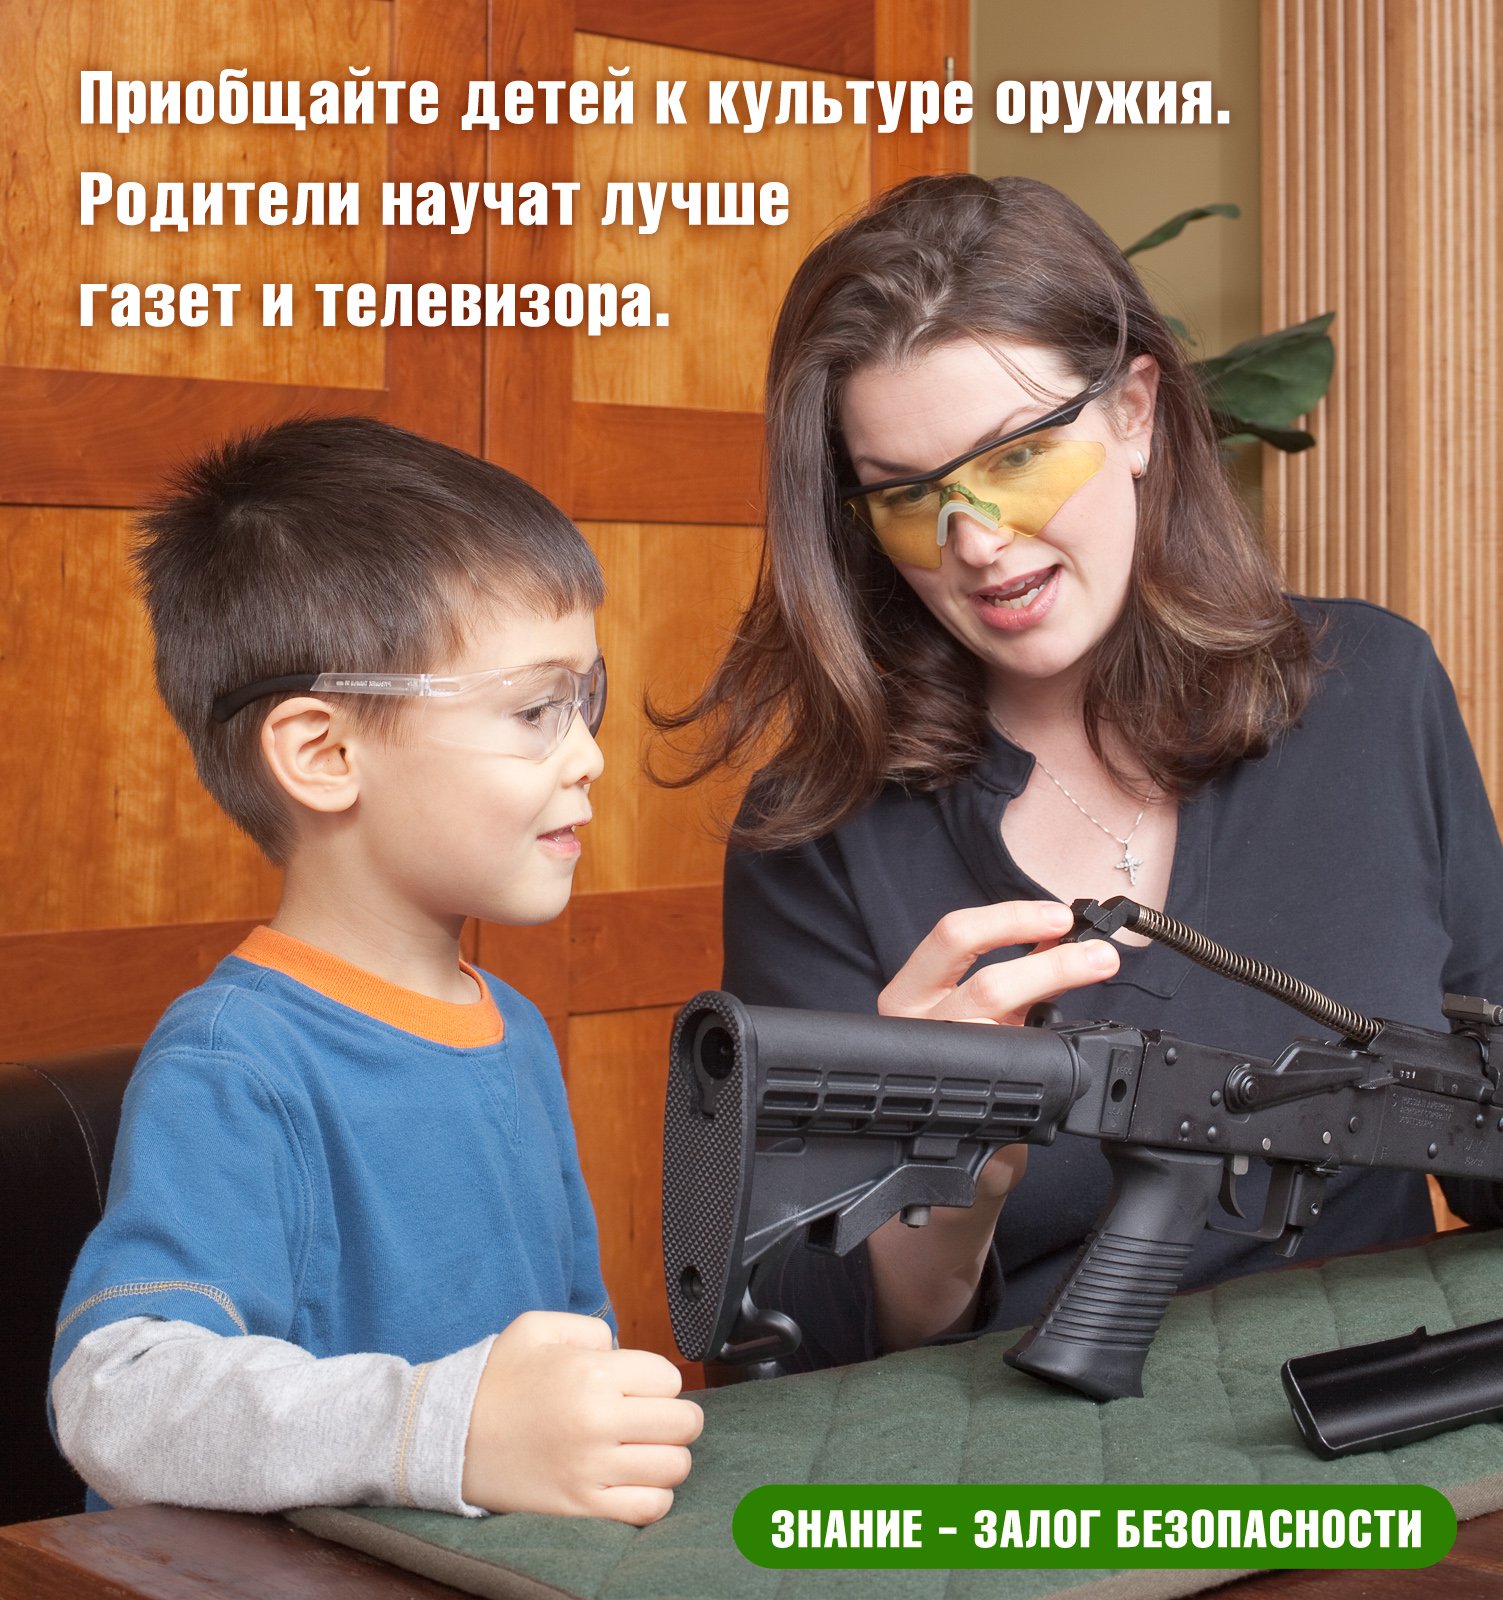 Оружие воспитывает. Реклама оружия. Оружие для детей. Реклама оружия и дети. Мемы про оружие.